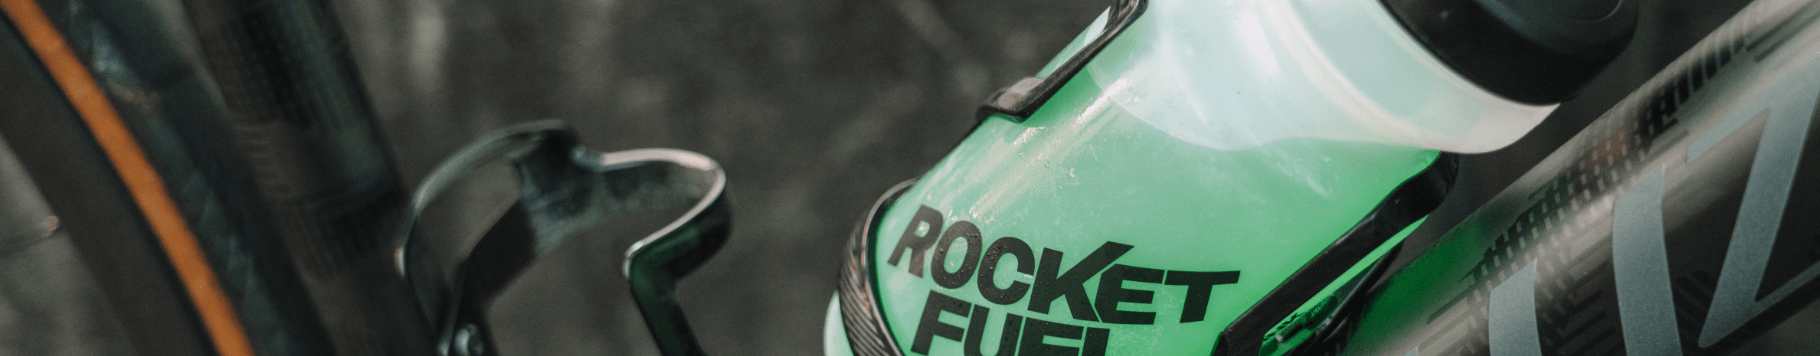 Rocket Fuel - Sports drink - Bottle on a road bike - Cycling